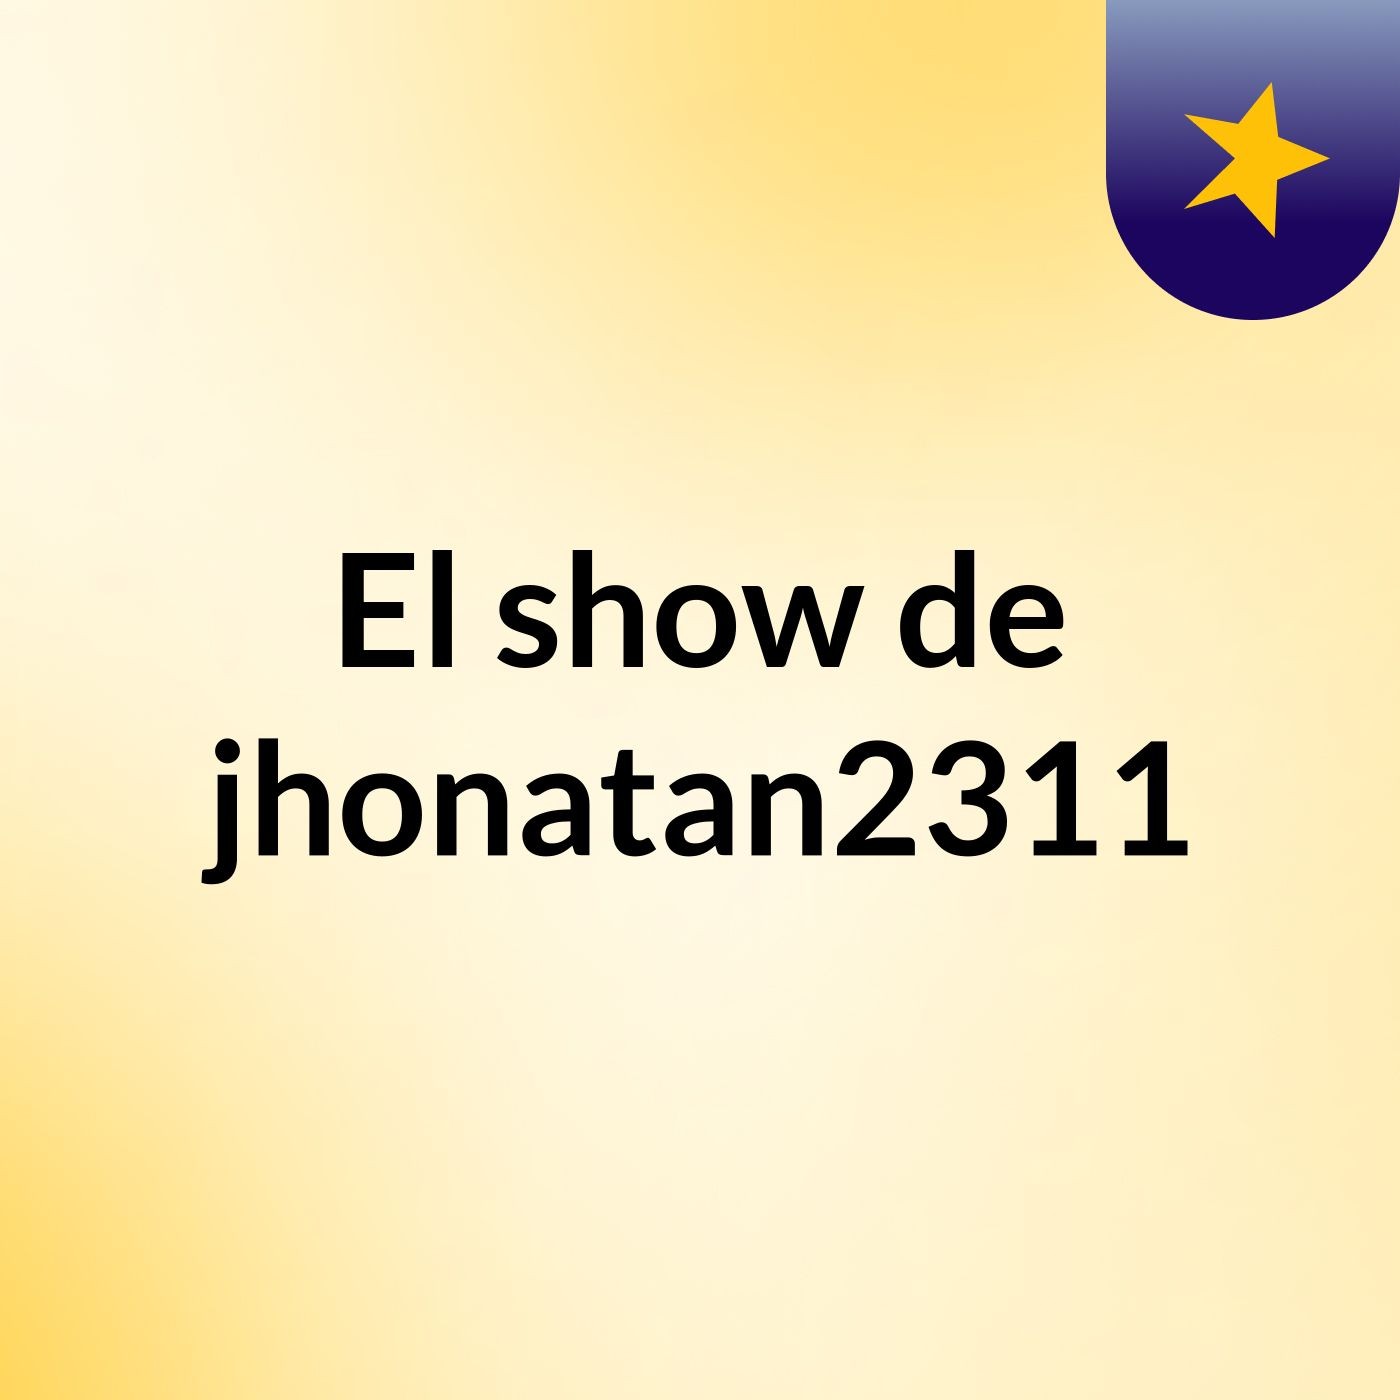 El show de jhonatan2311